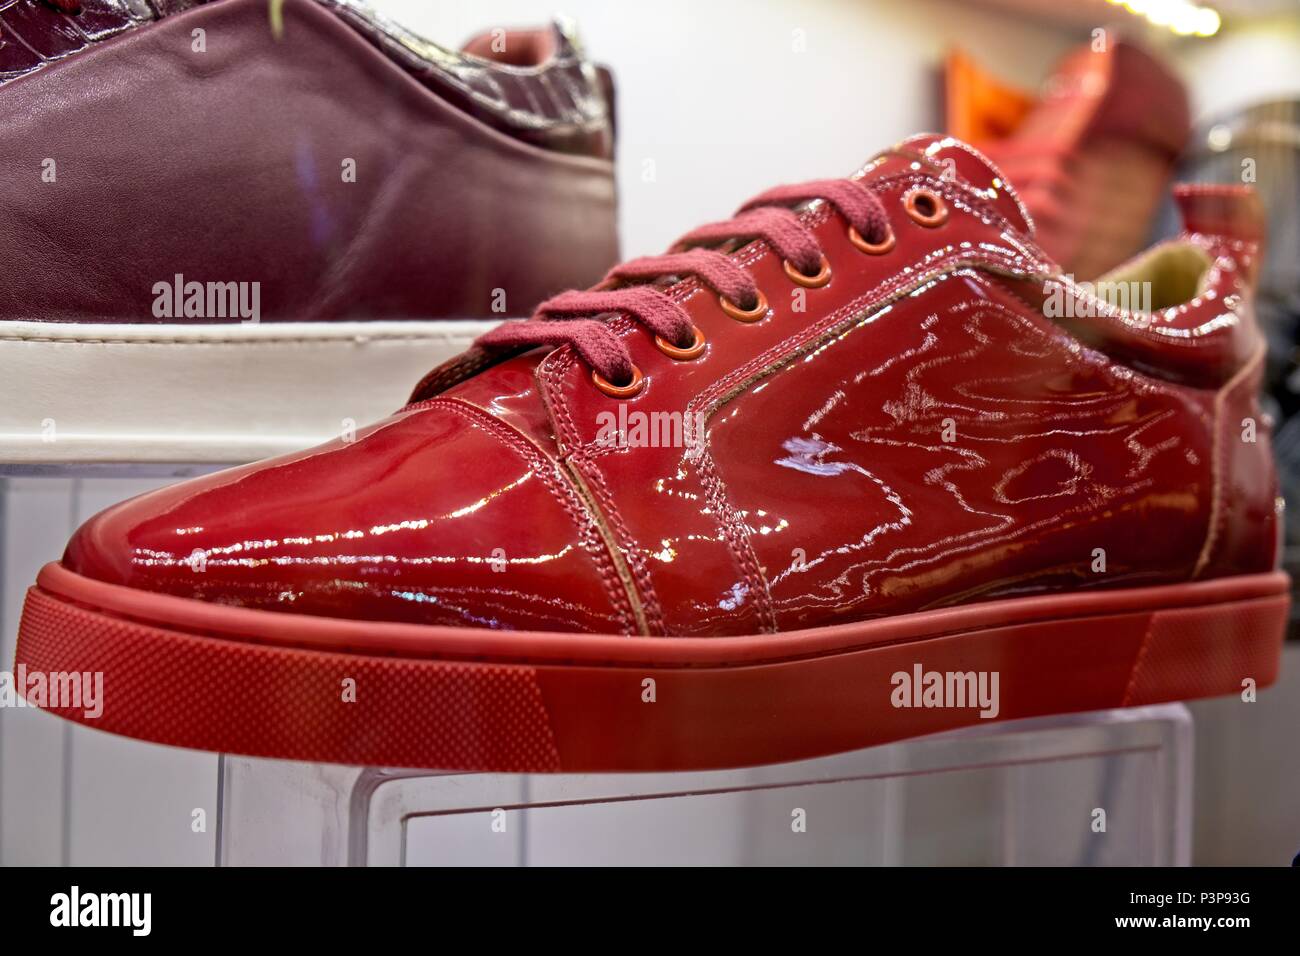 ISTANBUL, Turchia - 25 maggio : Rosso scarpe per la vendita nel Grand Bazaar a Istanbul Turchia il 25 maggio 2018 Foto Stock